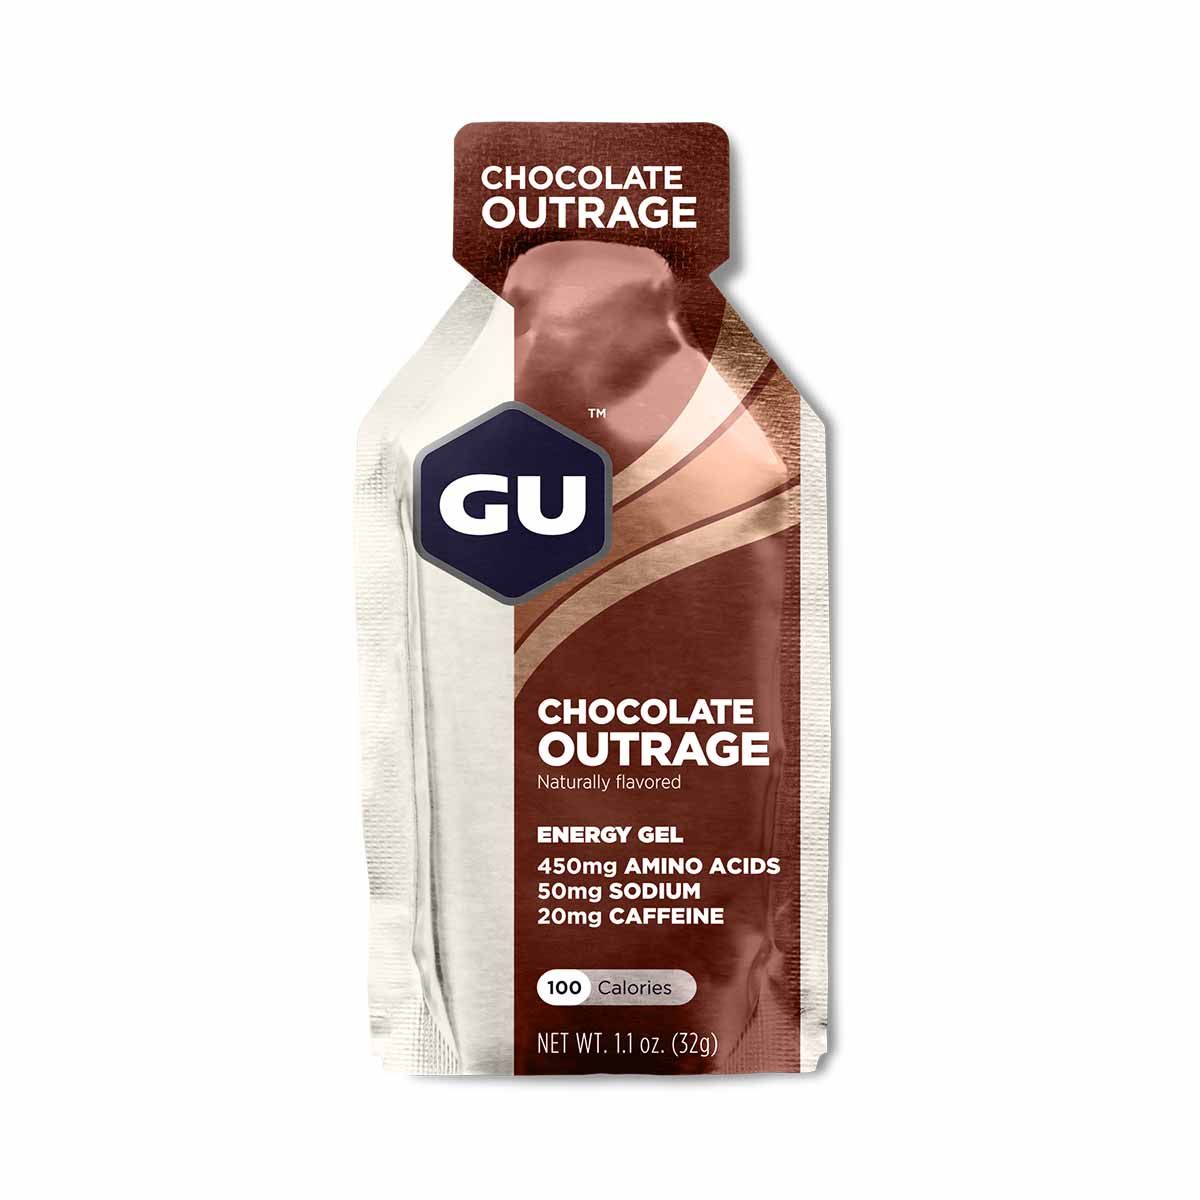 Original Gu Energy gel - Chocolate outrage